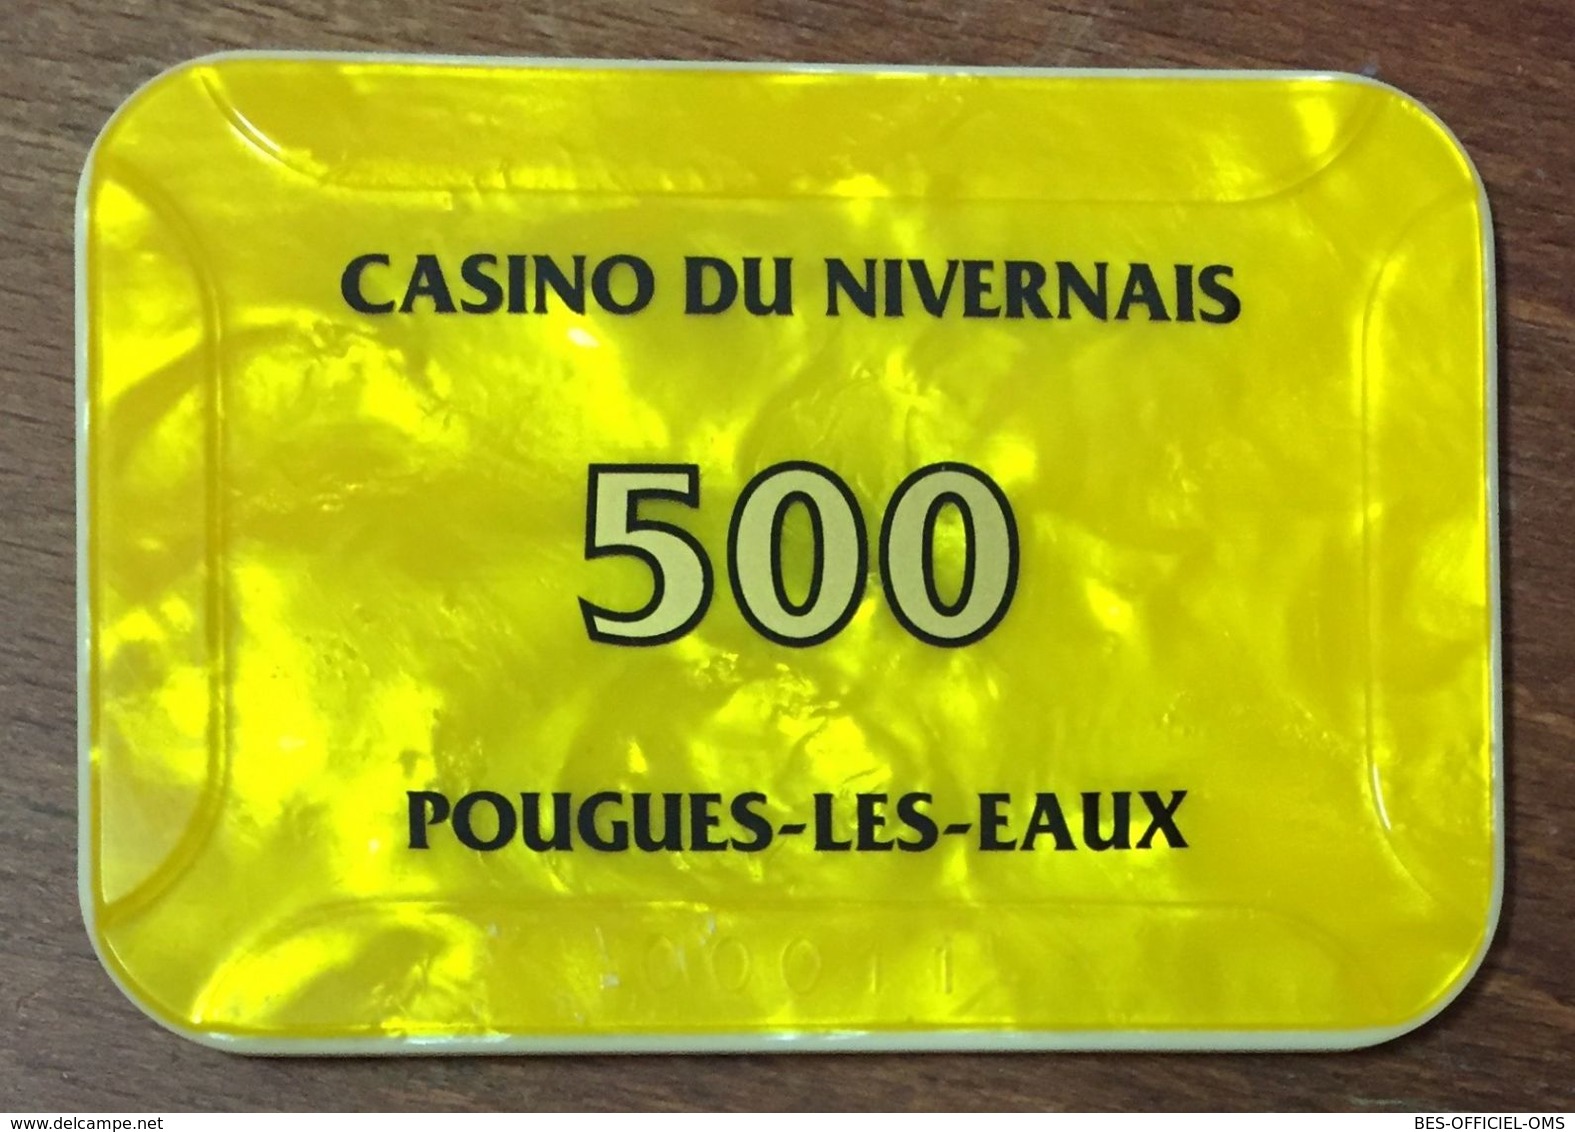 58 POUGUES LES EAUX CASINO DU NIVERNAIS PLAQUE DE 500 FRANCS N°00011 JETON CHIP TOKENS COINS GAMING - Casino